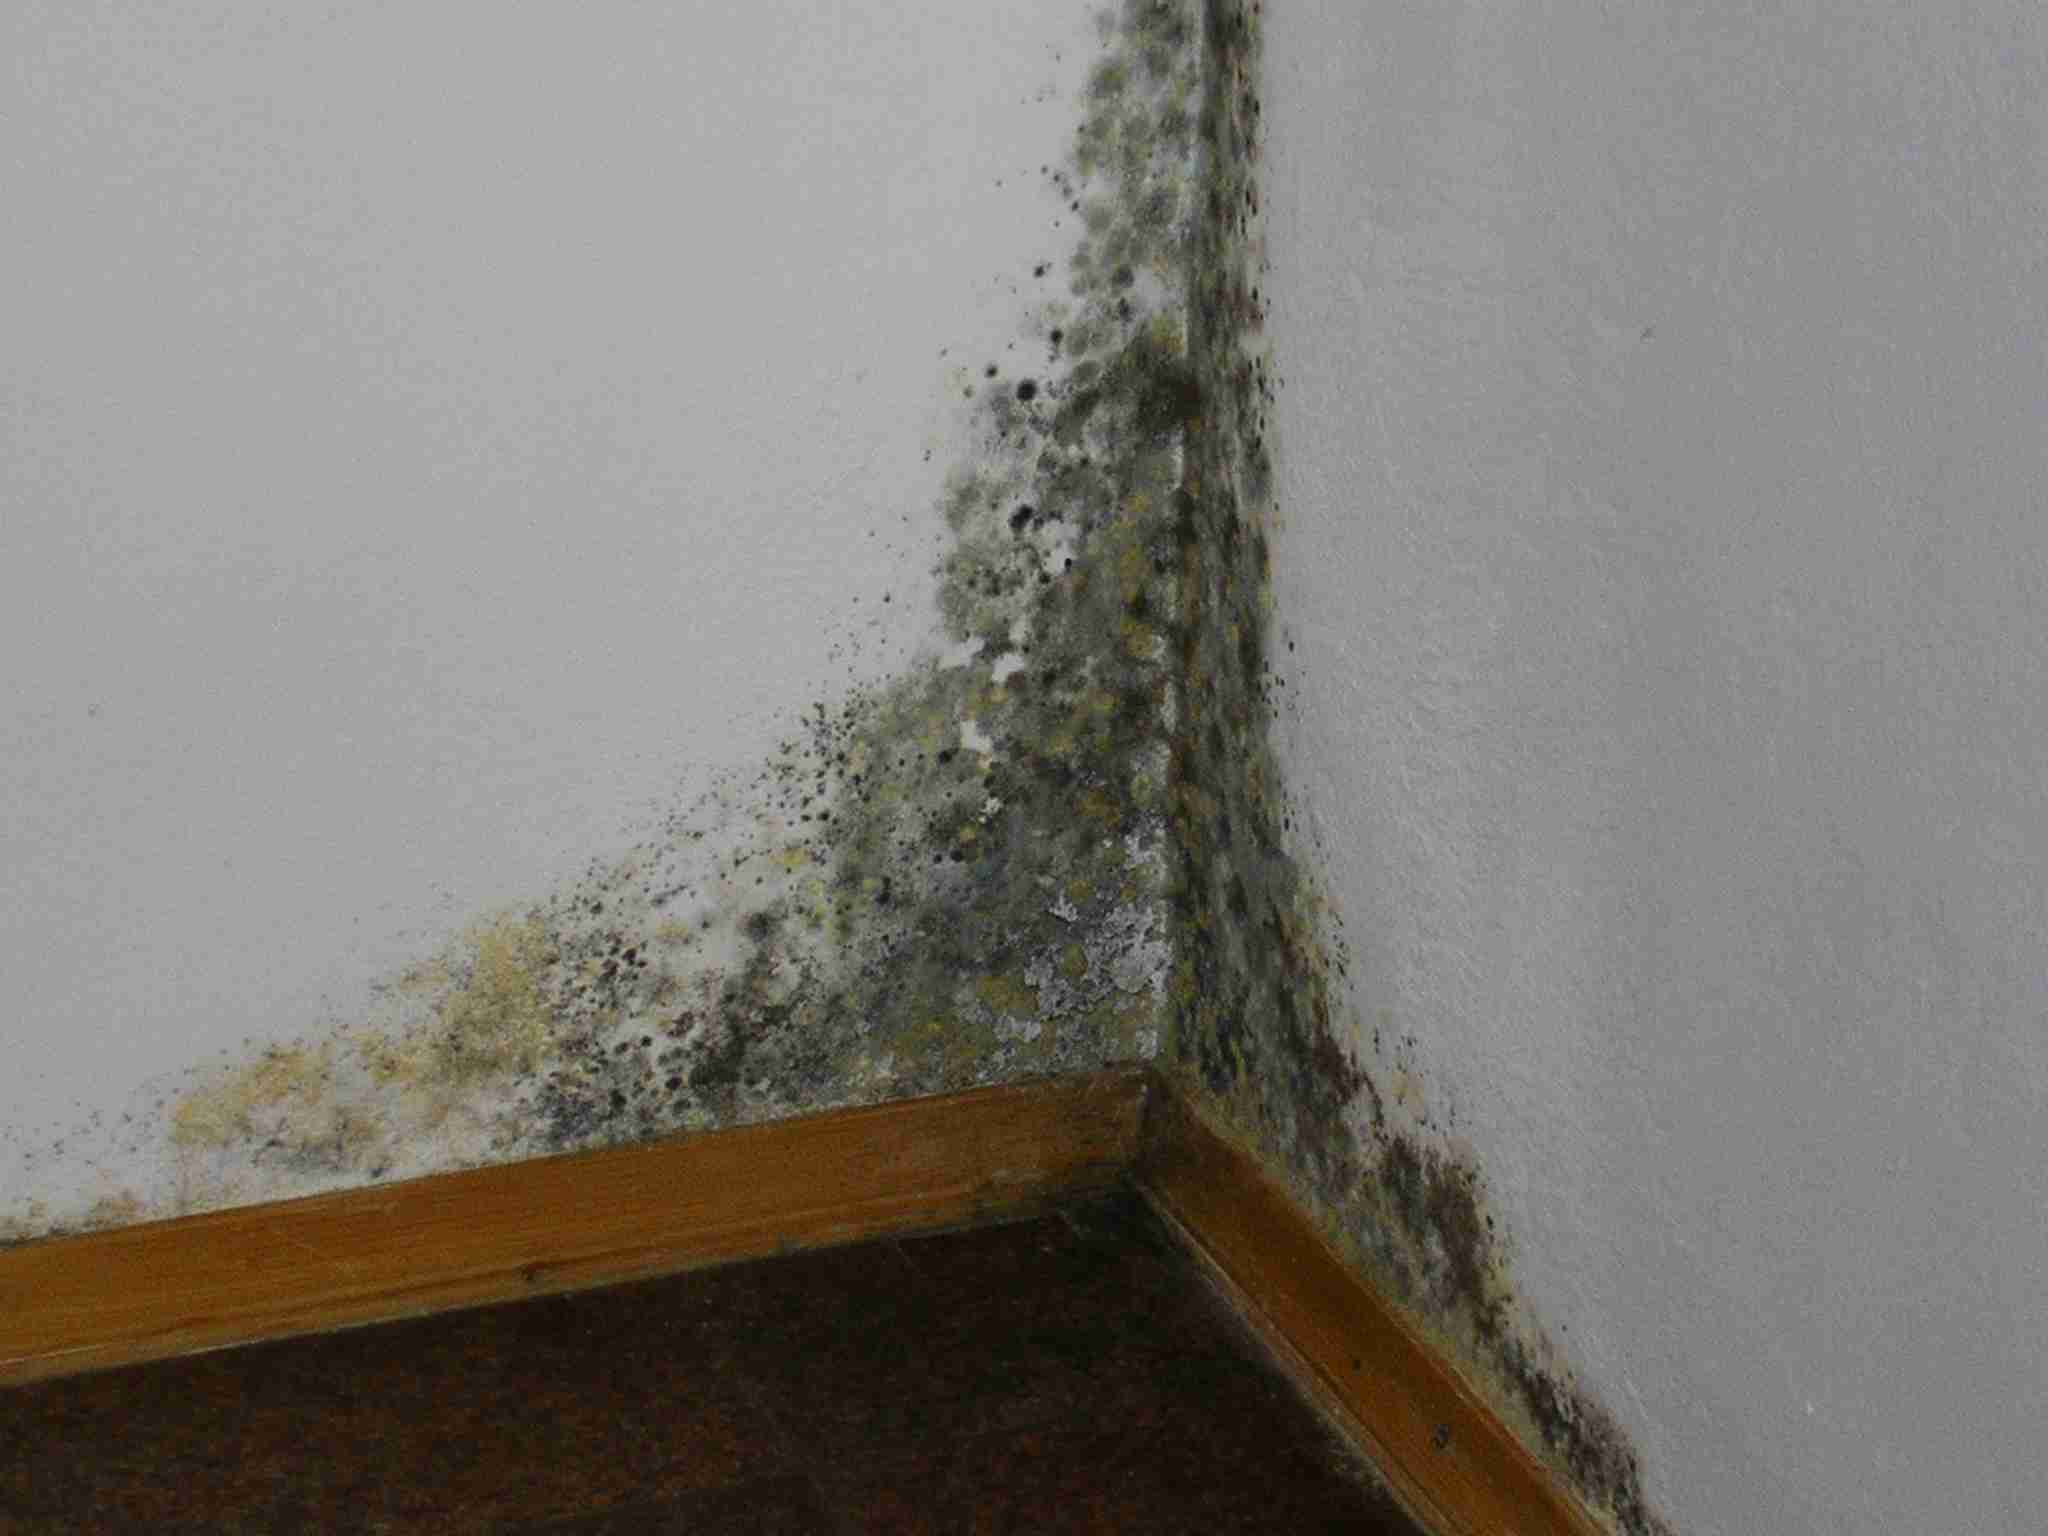 Плесень на стене в квартире: как избавиться, чем вывести плесень